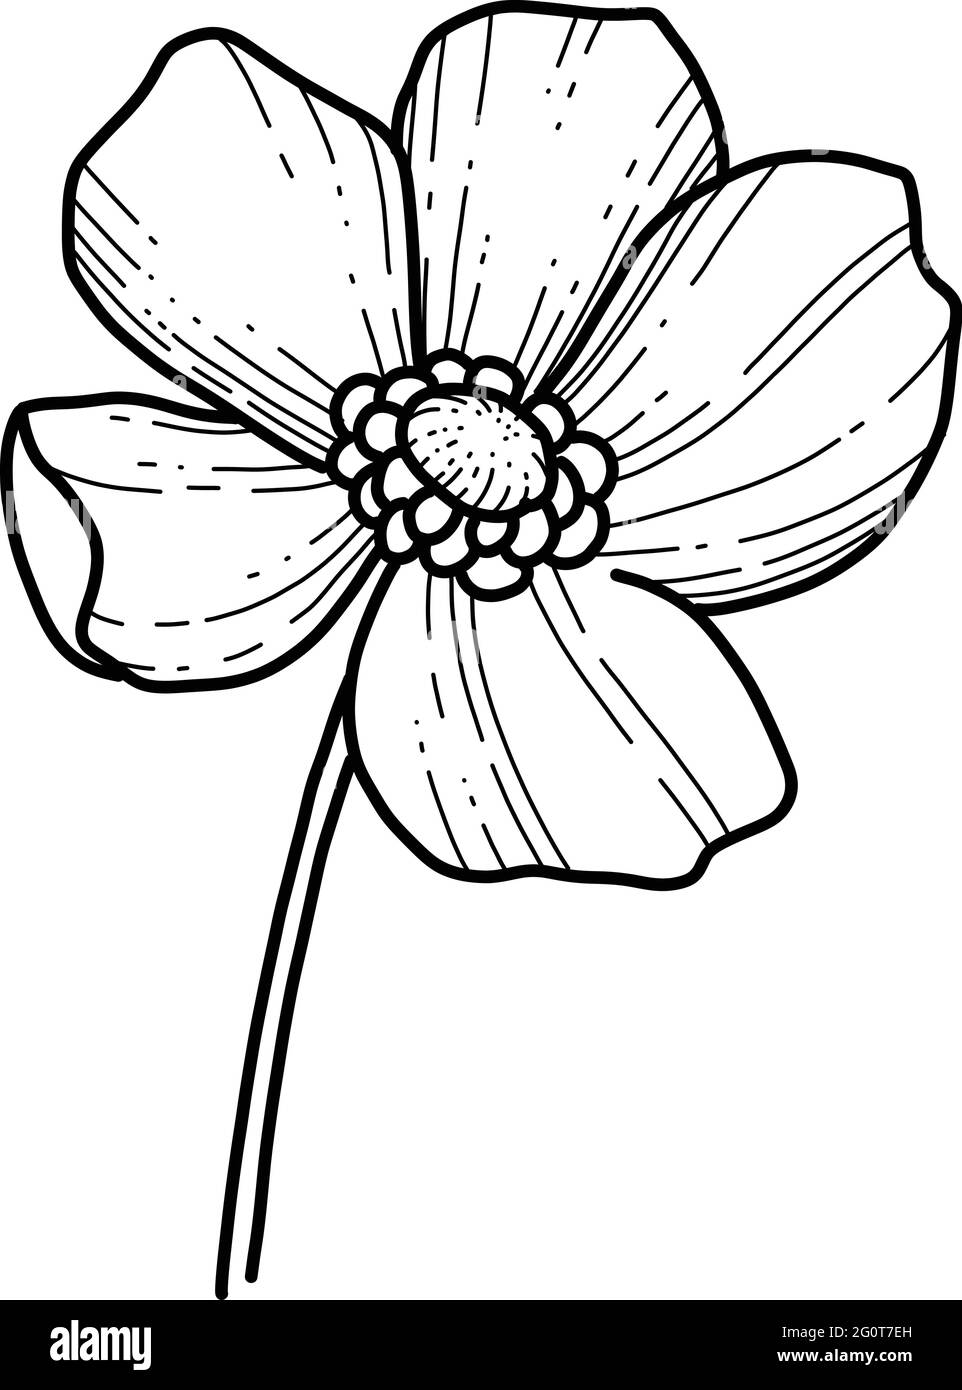 Main libre Sakura fleur vecteur, belle ligne art Peach fleur isoler sur fond blanc. Fleur du japon de printemps. Style dessiné à la main réaliste Illustration de Vecteur